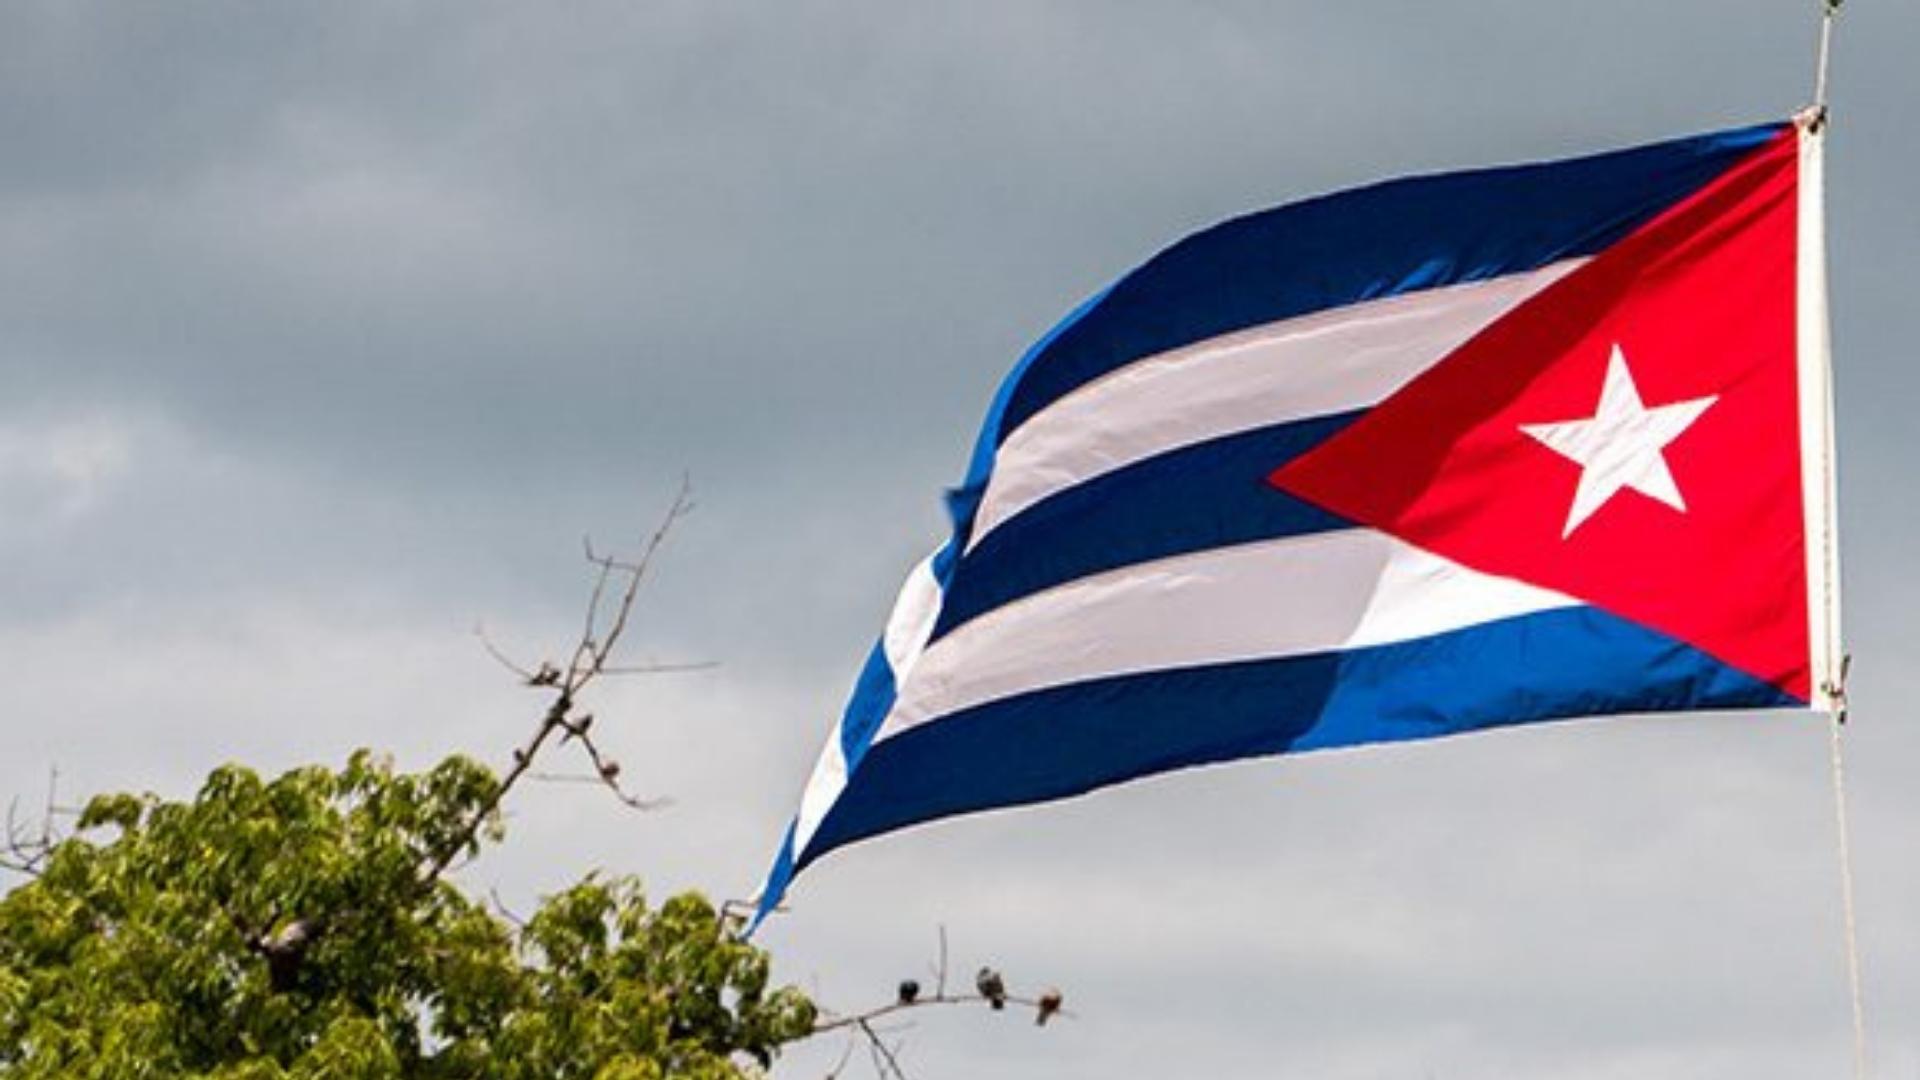 Bandera de Cuba ondeando. Foto: Cubadebate